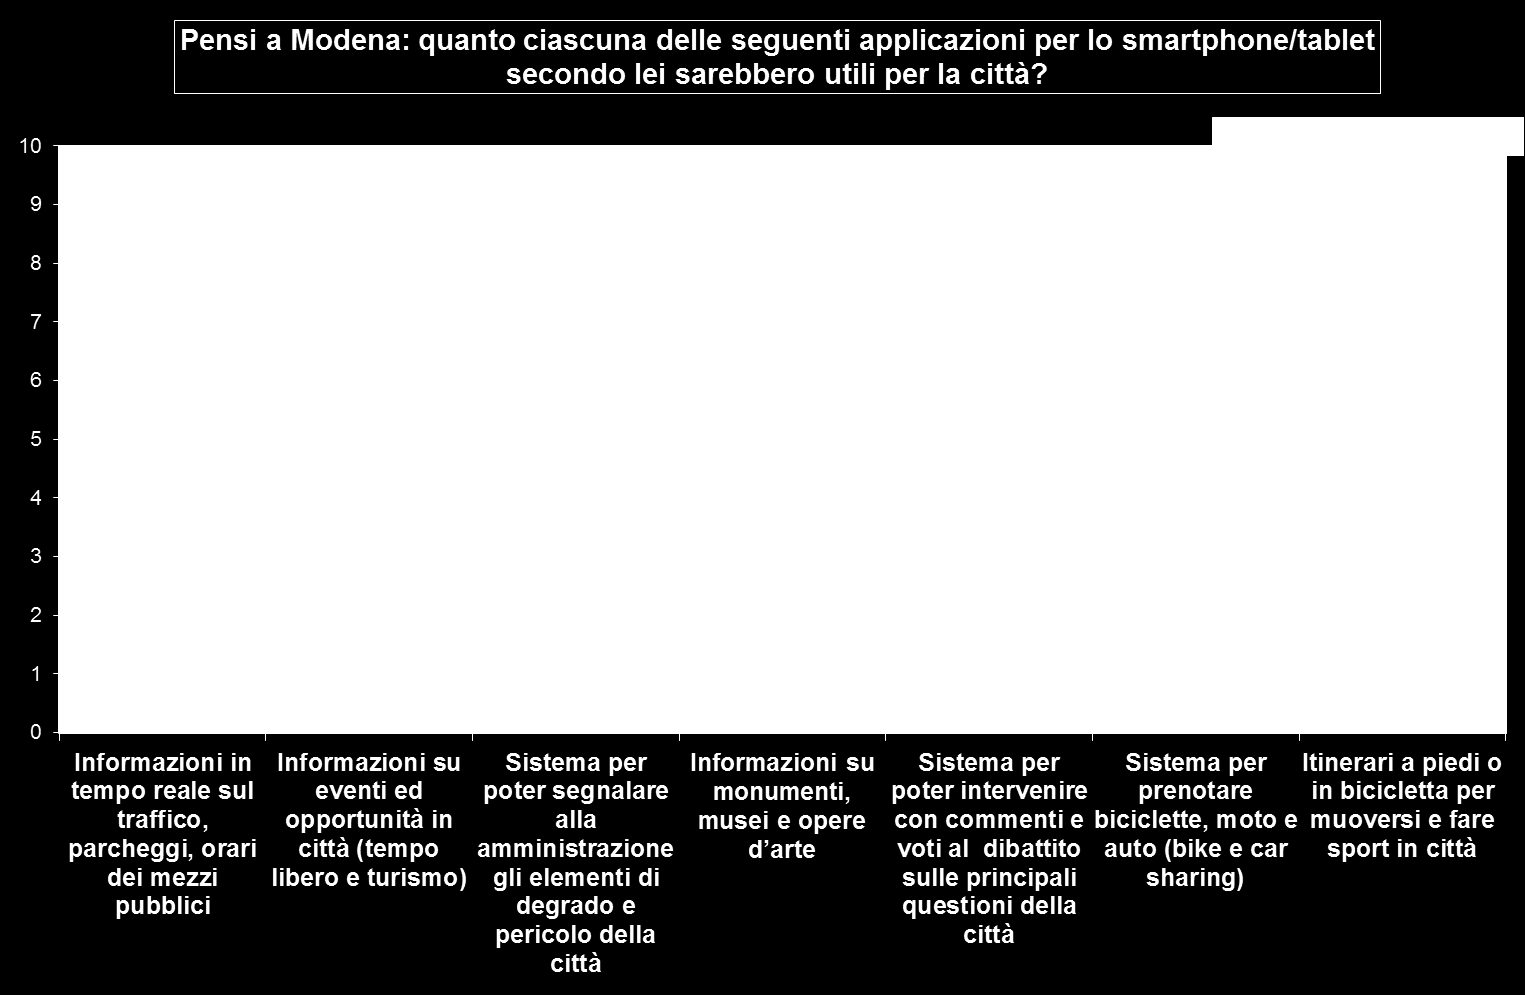 Anche per la diffusione dell utilizzo delle app è risultato opportuno proporre una serie di applicazioni relative alla città di Modena per cogliere una valutazione di utilità.